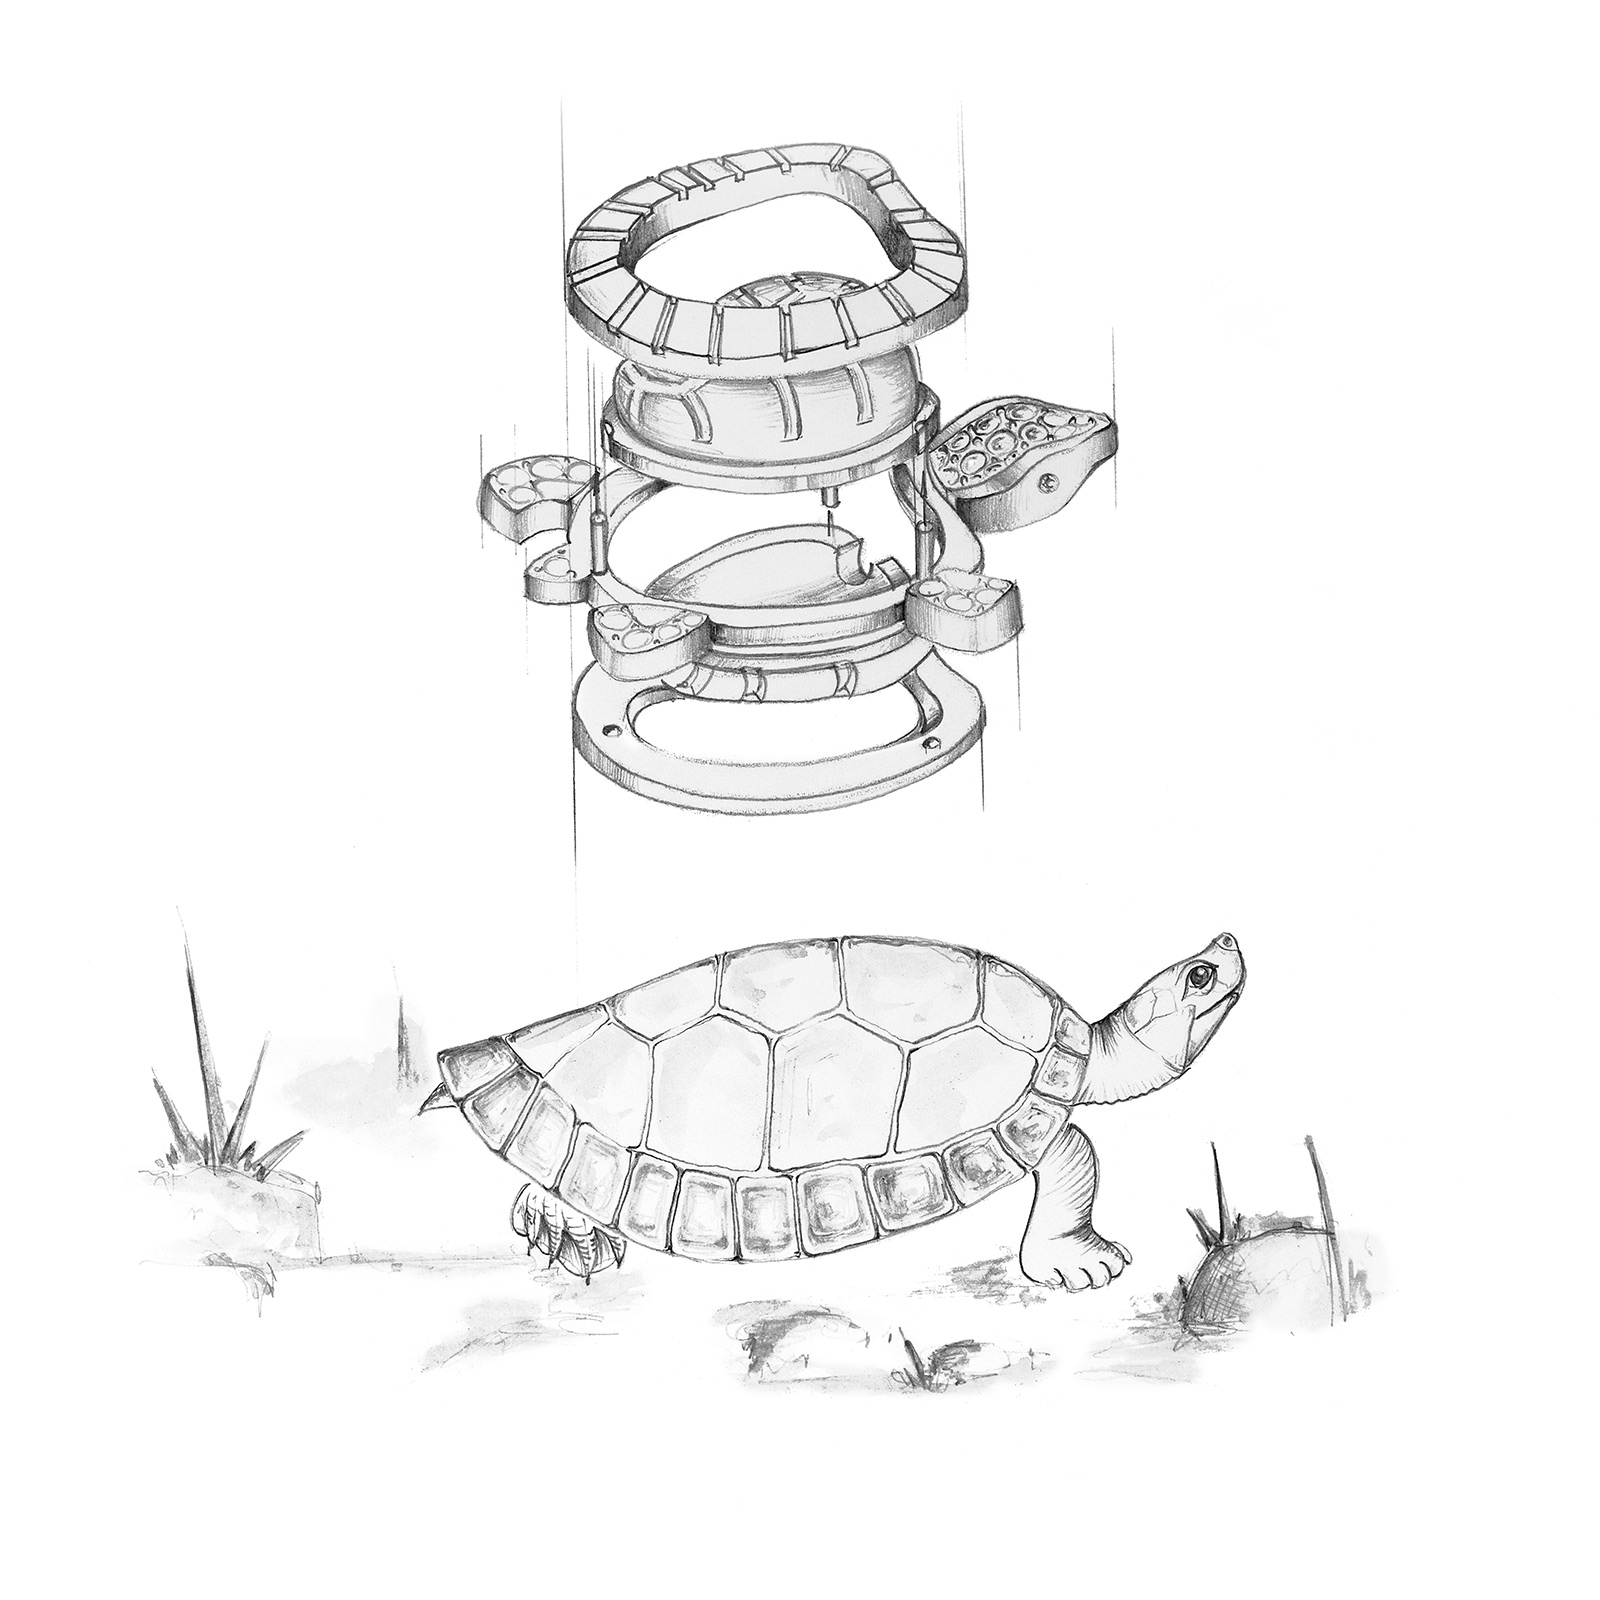 Die Batagur-Flussschildkröte wurde im Collier Batagur von der Manufaktur Ableitner auf einzigartige Weise in ein Schmuckstück verwandelt.